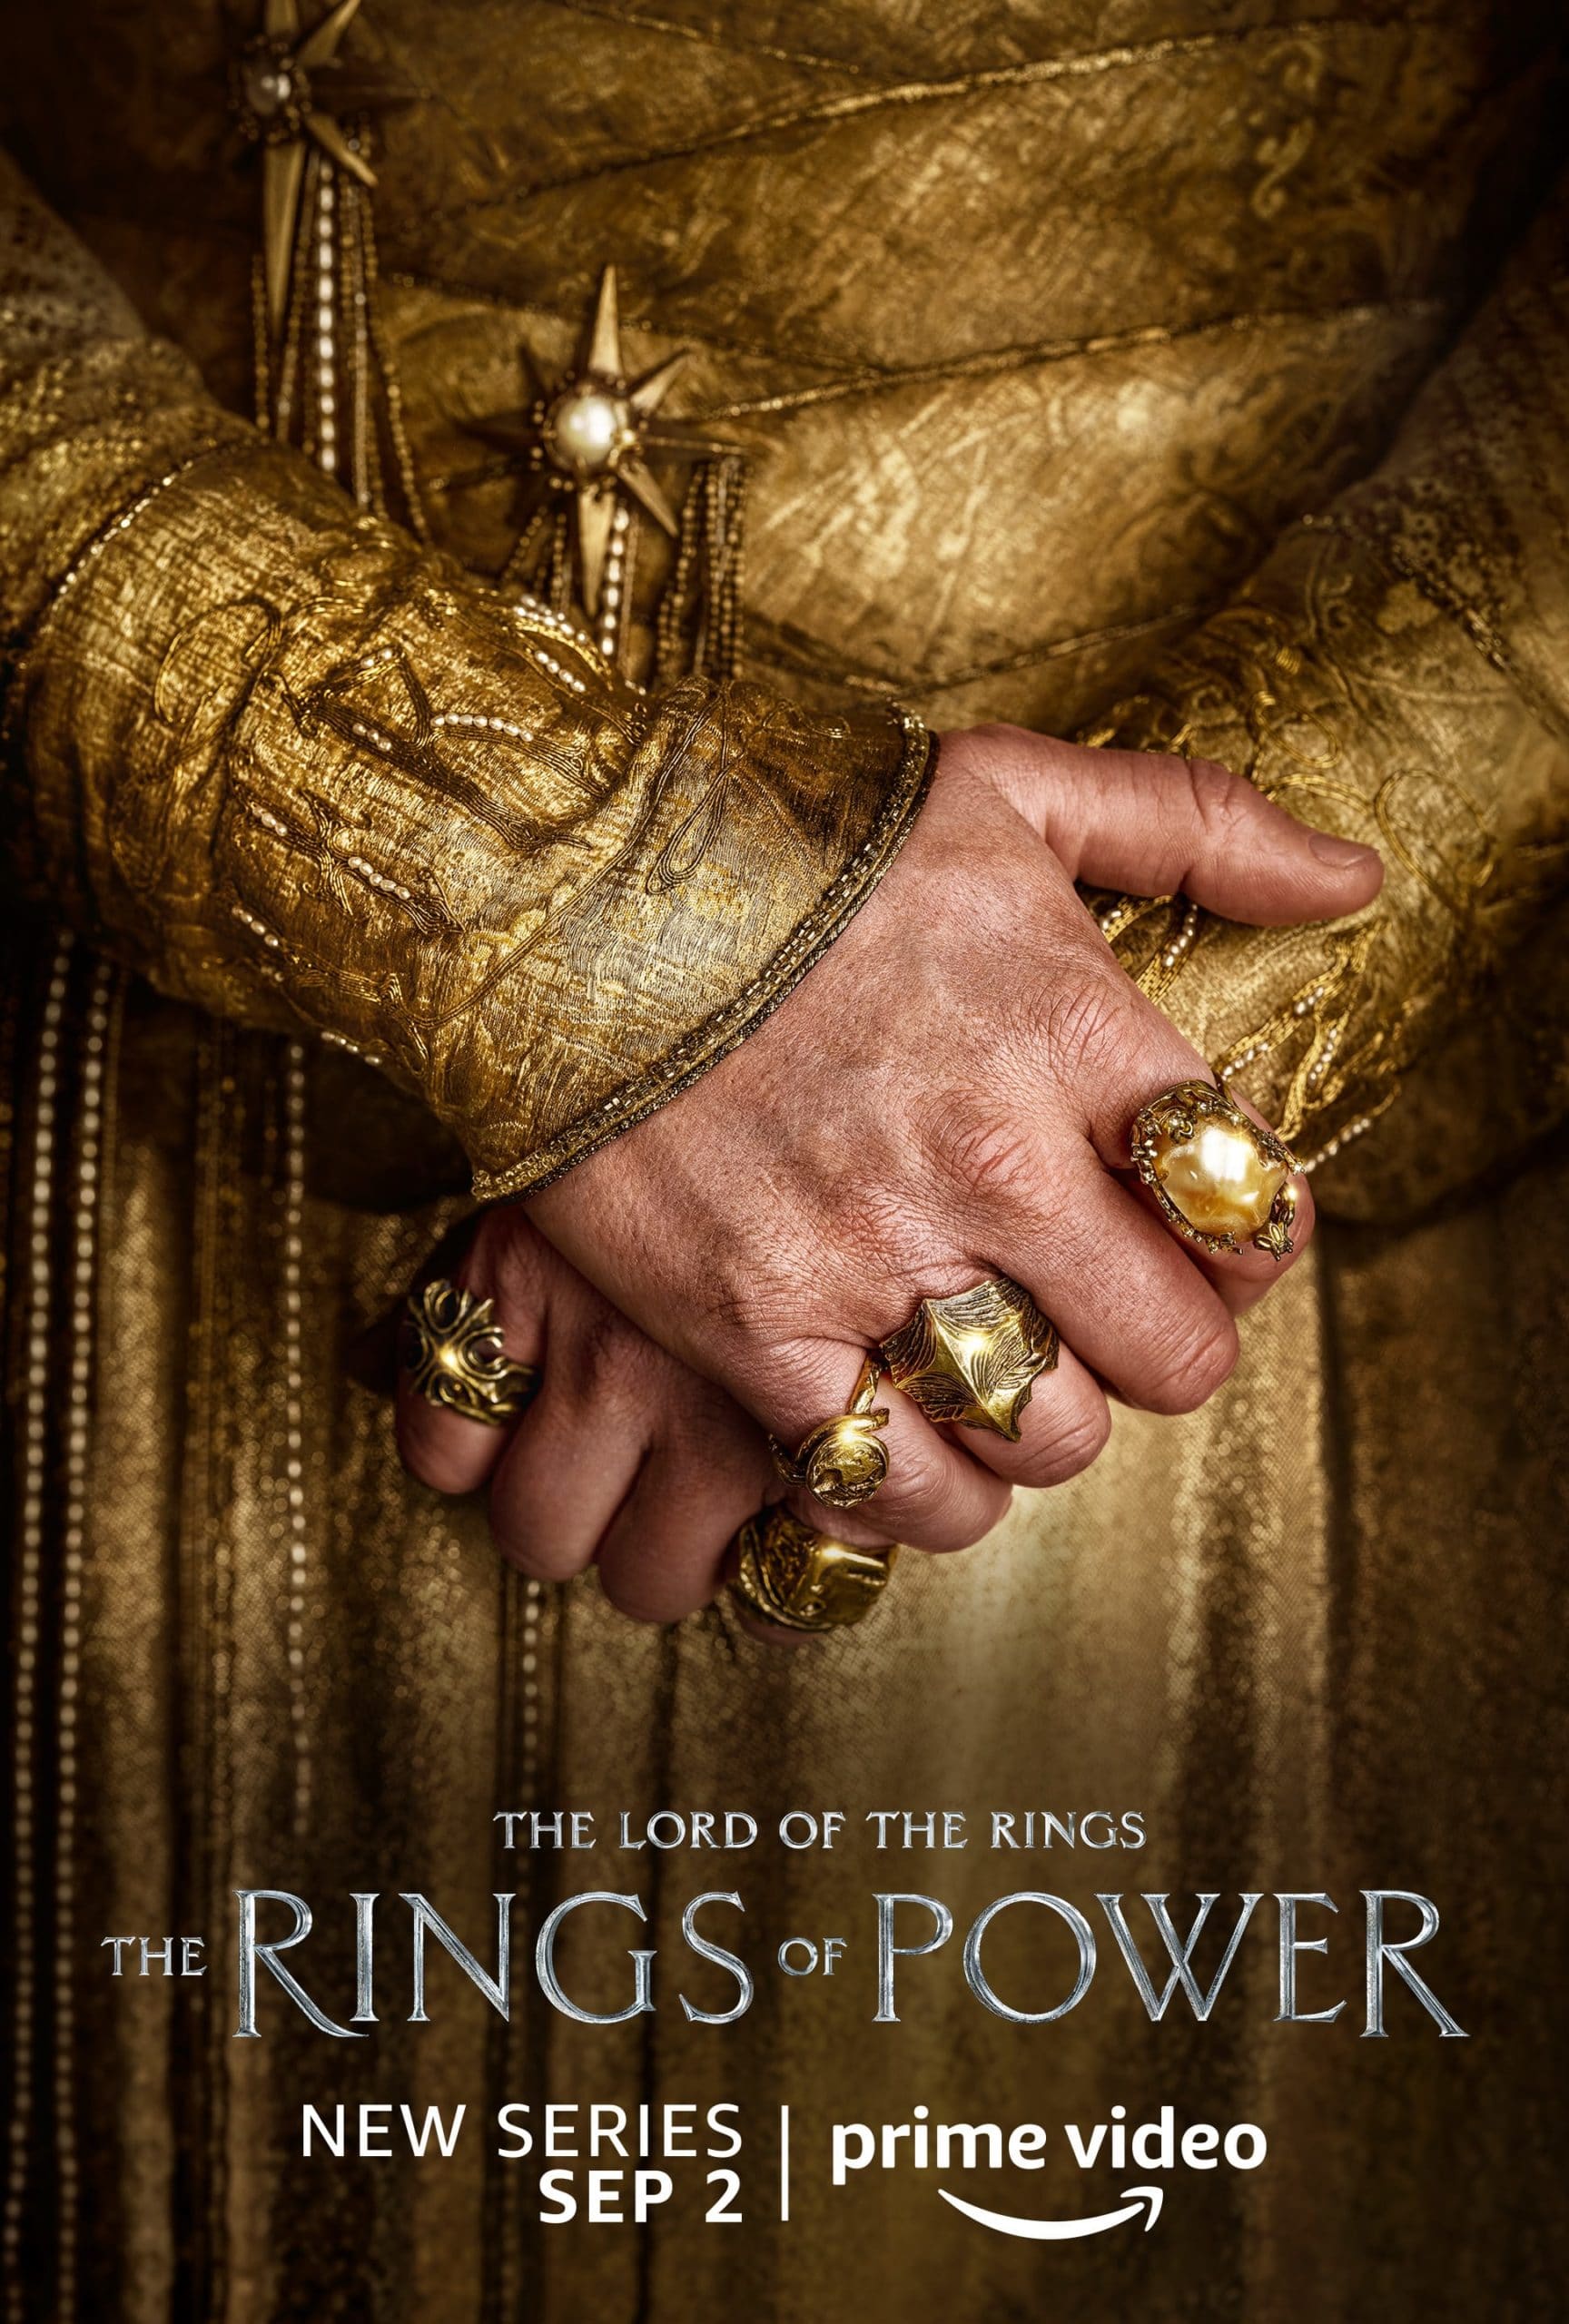 Die Ringe der Macht: 23 Poster veröffentlicht – Deutsche Tolkien